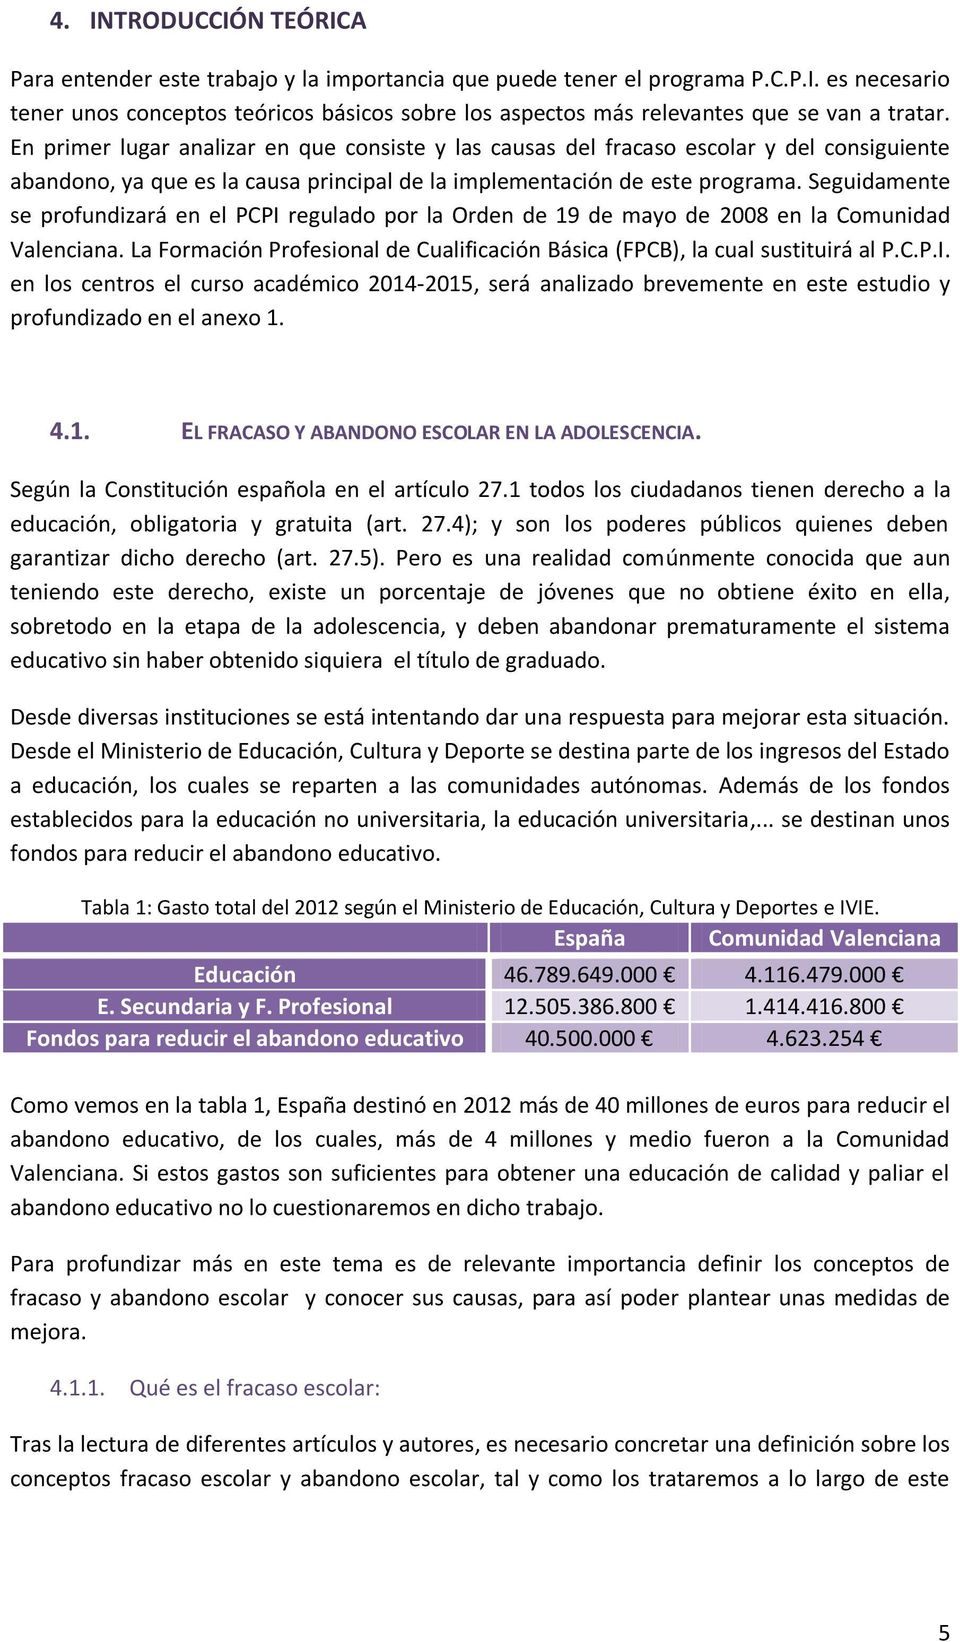 Seguidamente se profundizará en el PCPI regulado por la Orden de 19 de mayo de 2008 en la Comunidad Valenciana. La Formación Profesional de Cualificación Básica (FPCB), la cual sustituirá al P.C.P.I. en los centros el curso académico 2014-2015, será analizado brevemente en este estudio y profundizado en el anexo 1.